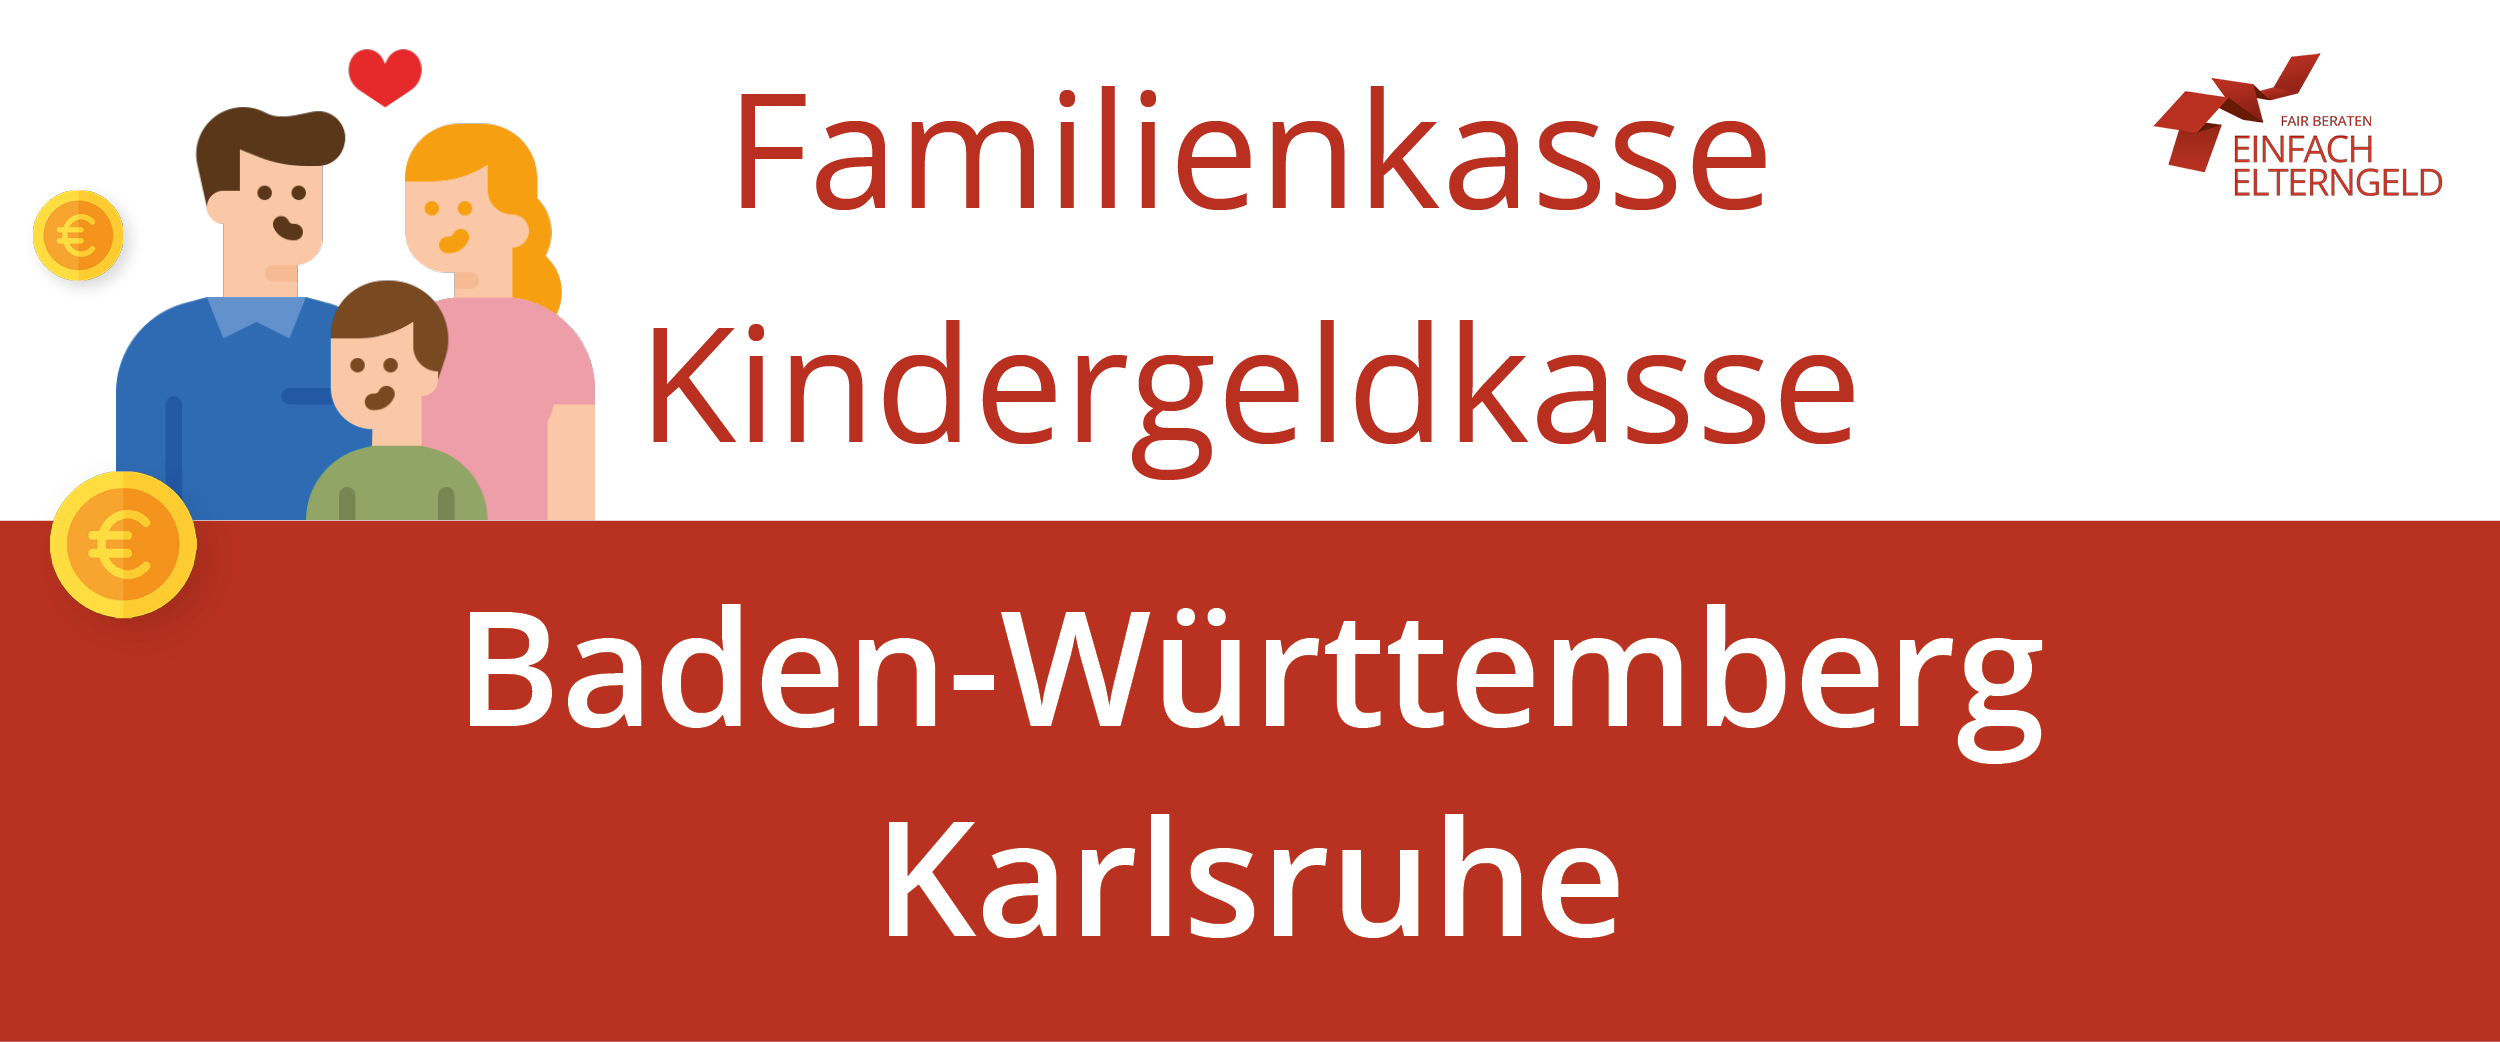 Familienkasse Kindergeldkasse Baden-Württemberg Karlsruhe - So erreichen Sie Ihre Familienkasse.